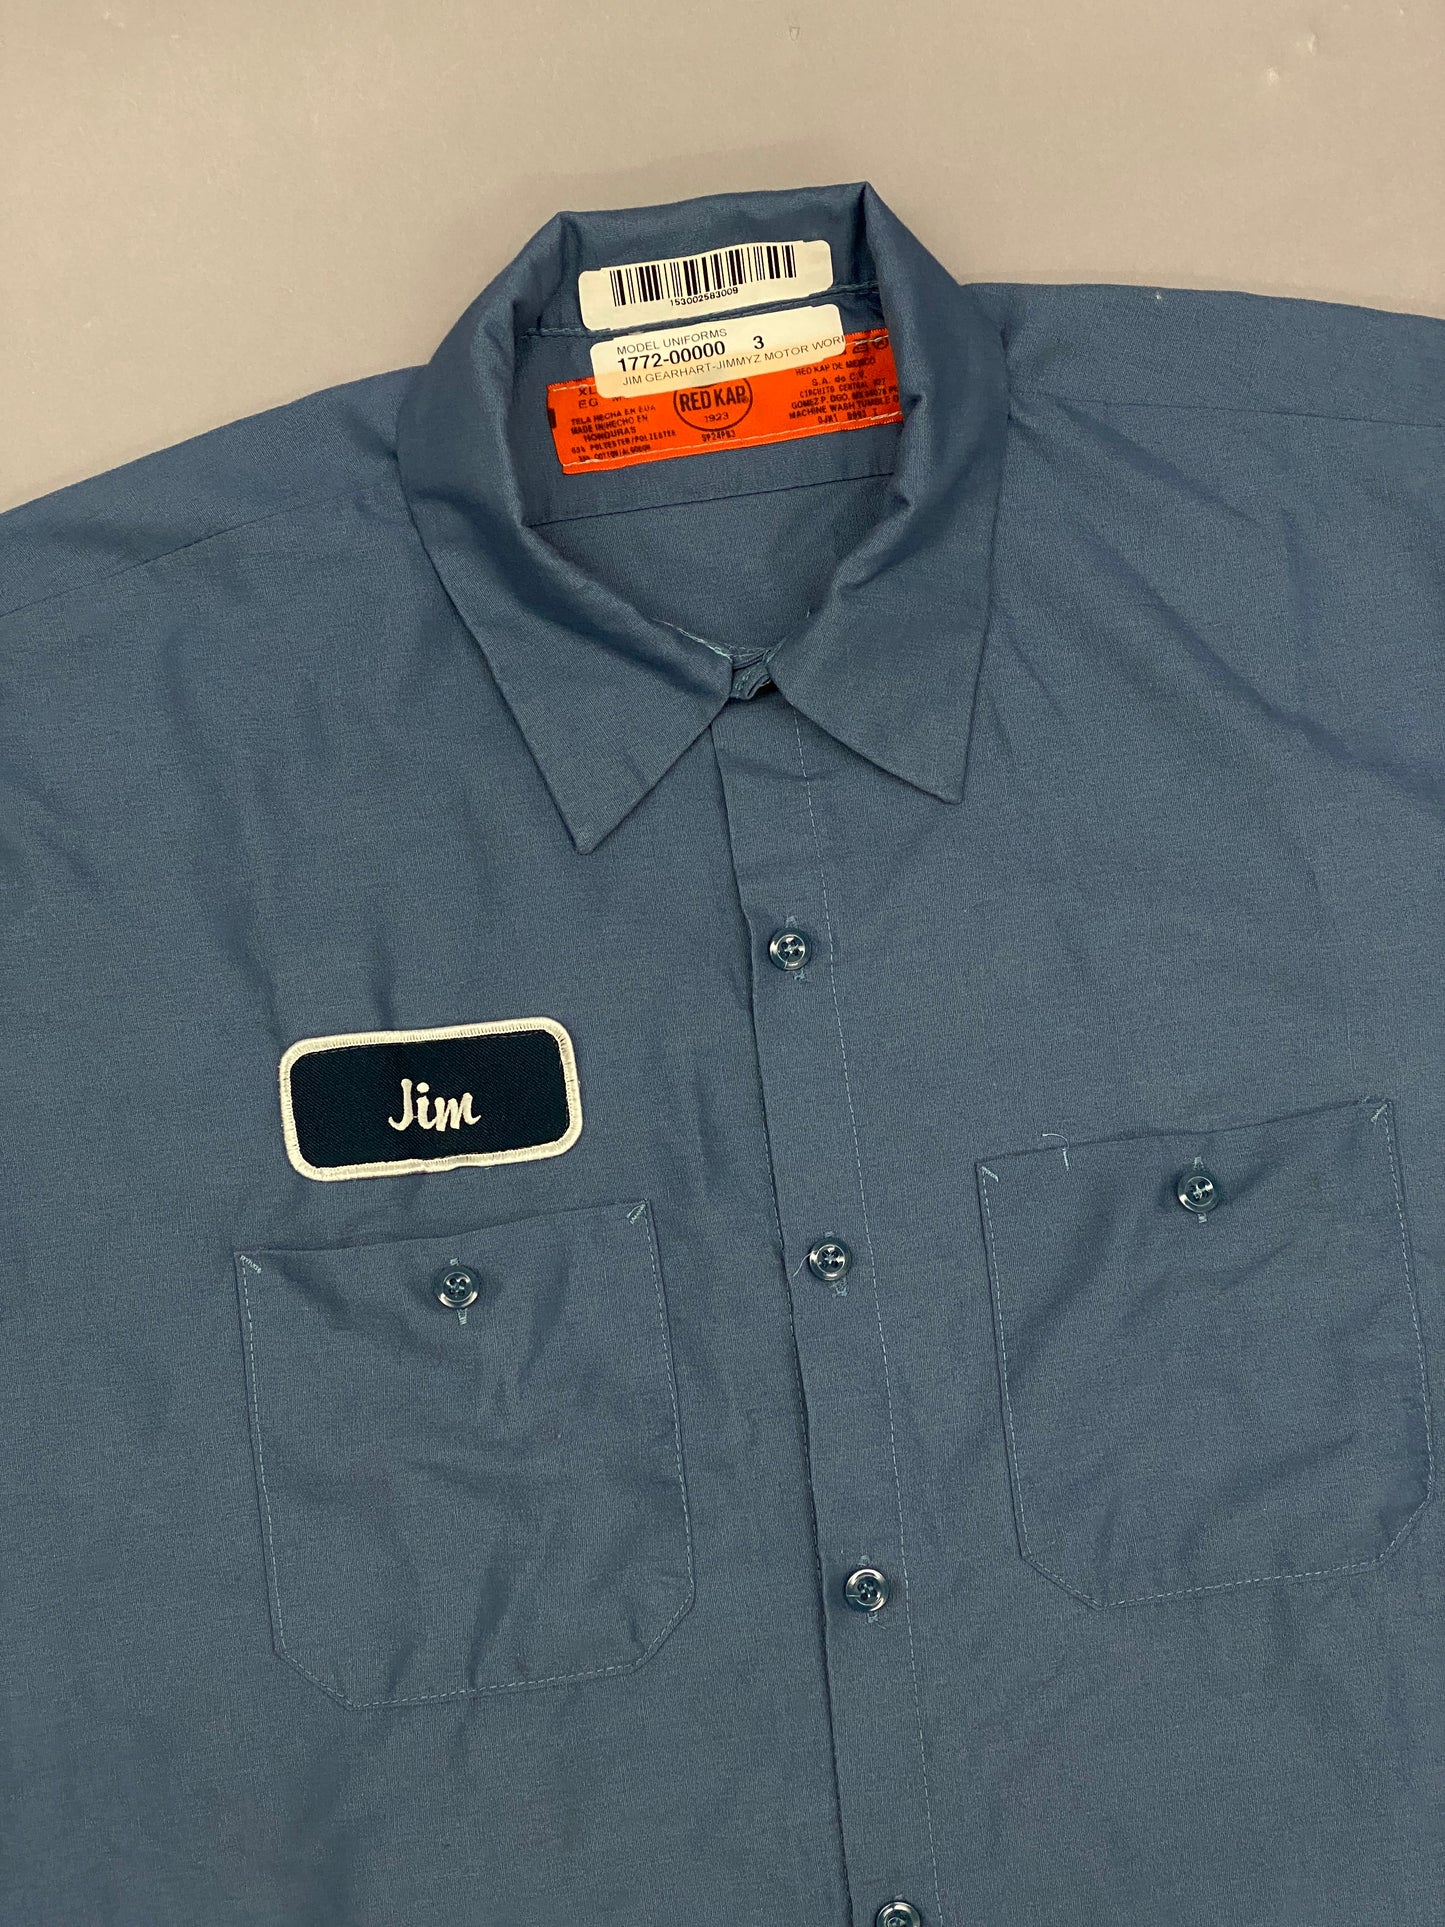 Jim Vintage Shirt